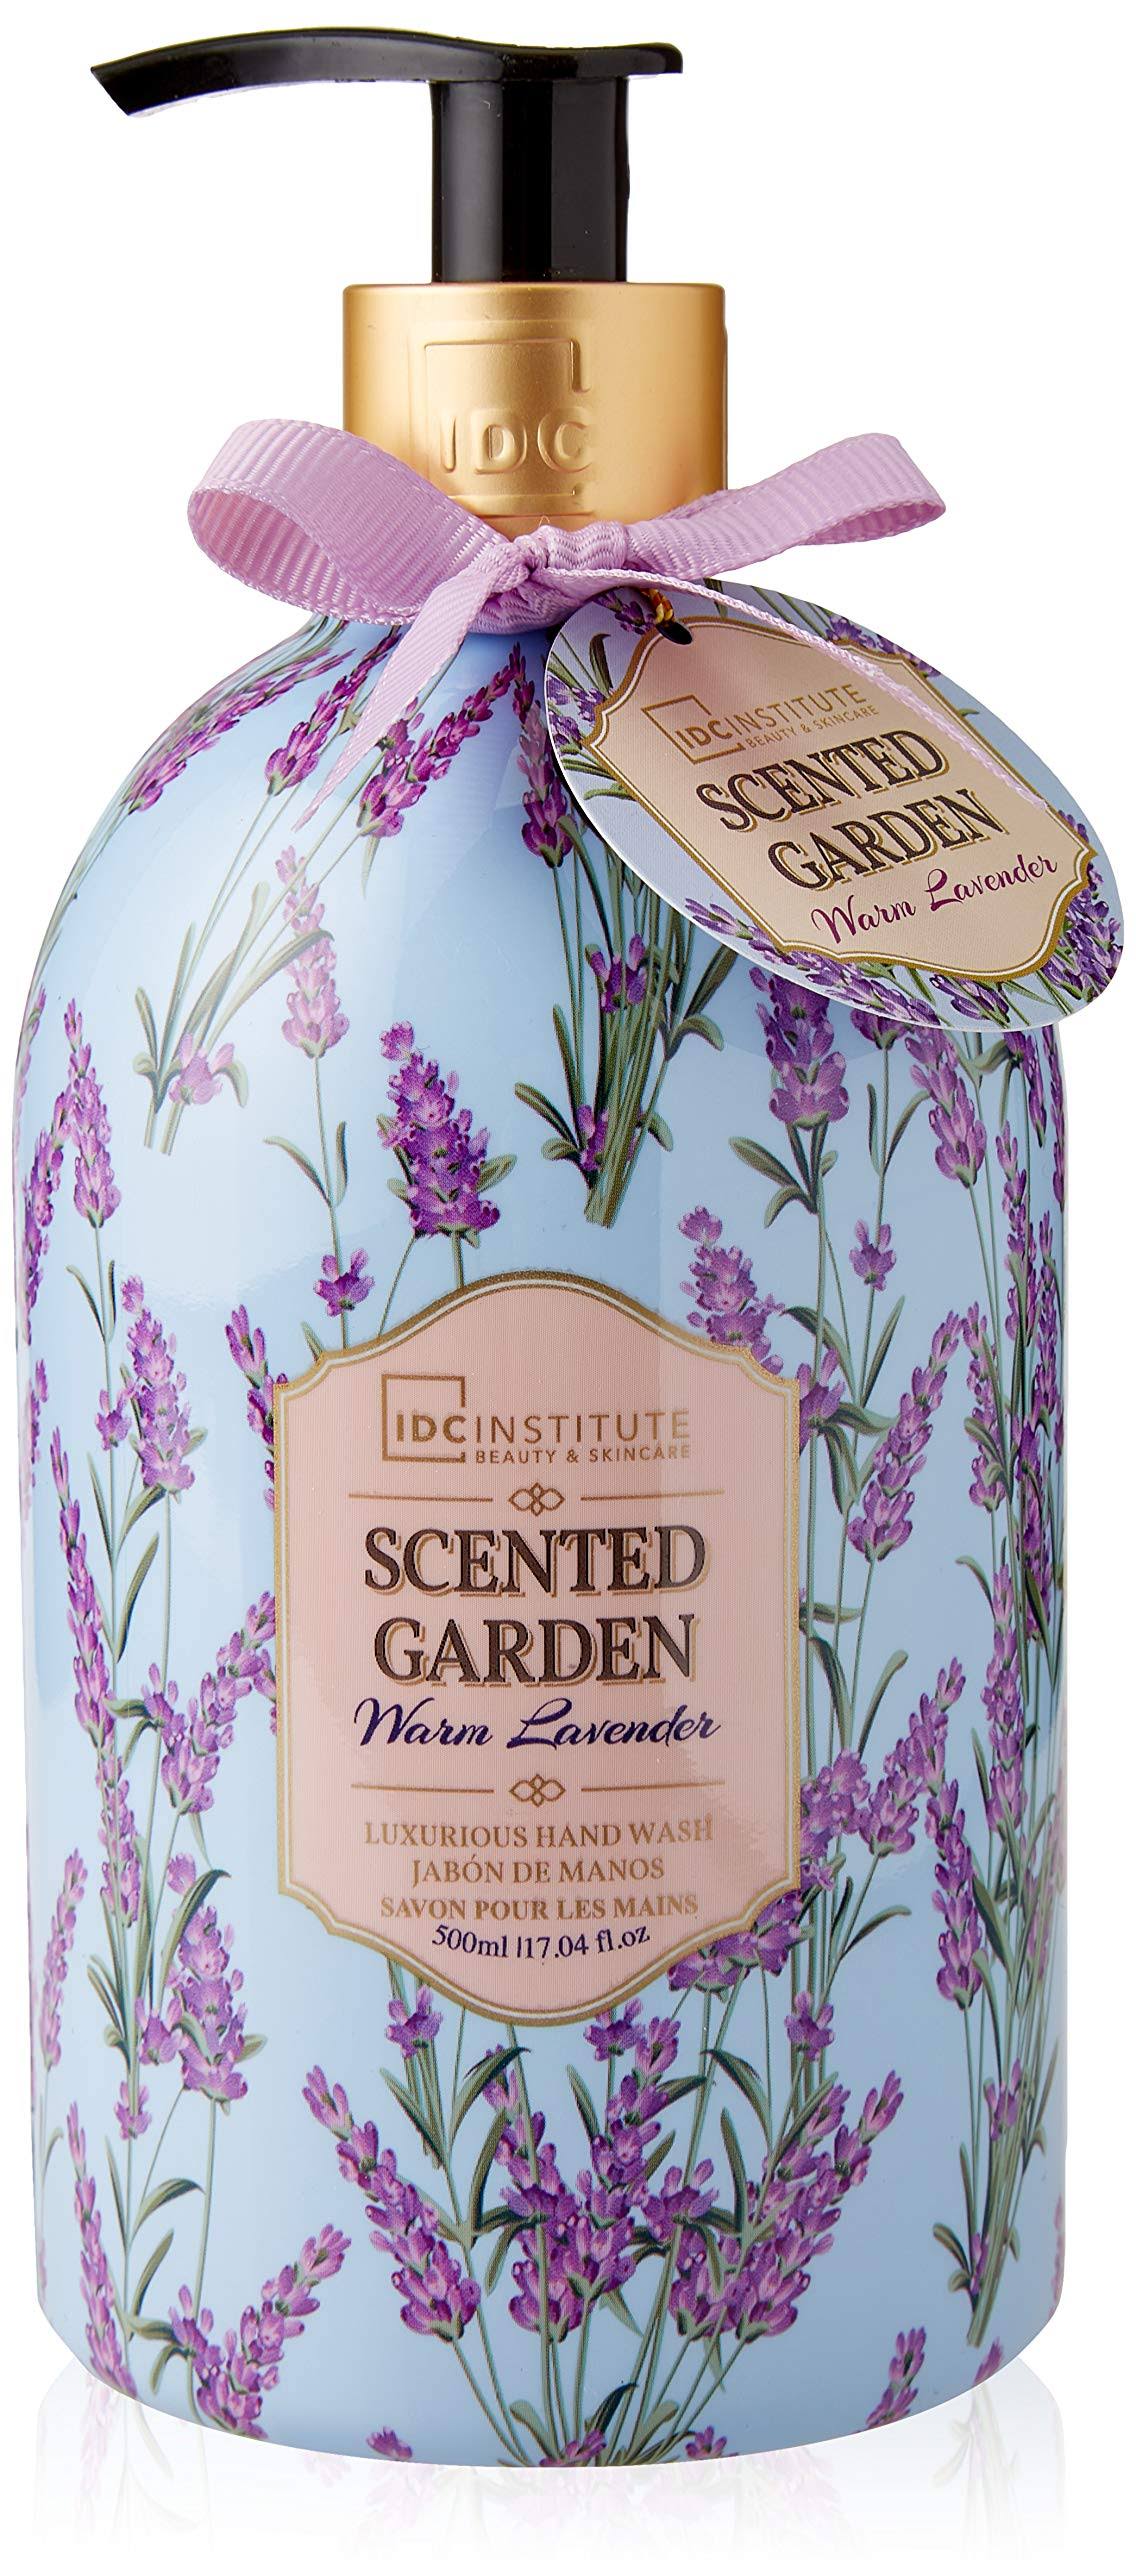 IDC Institute Hand Wash - Warm Lavender, 500ml